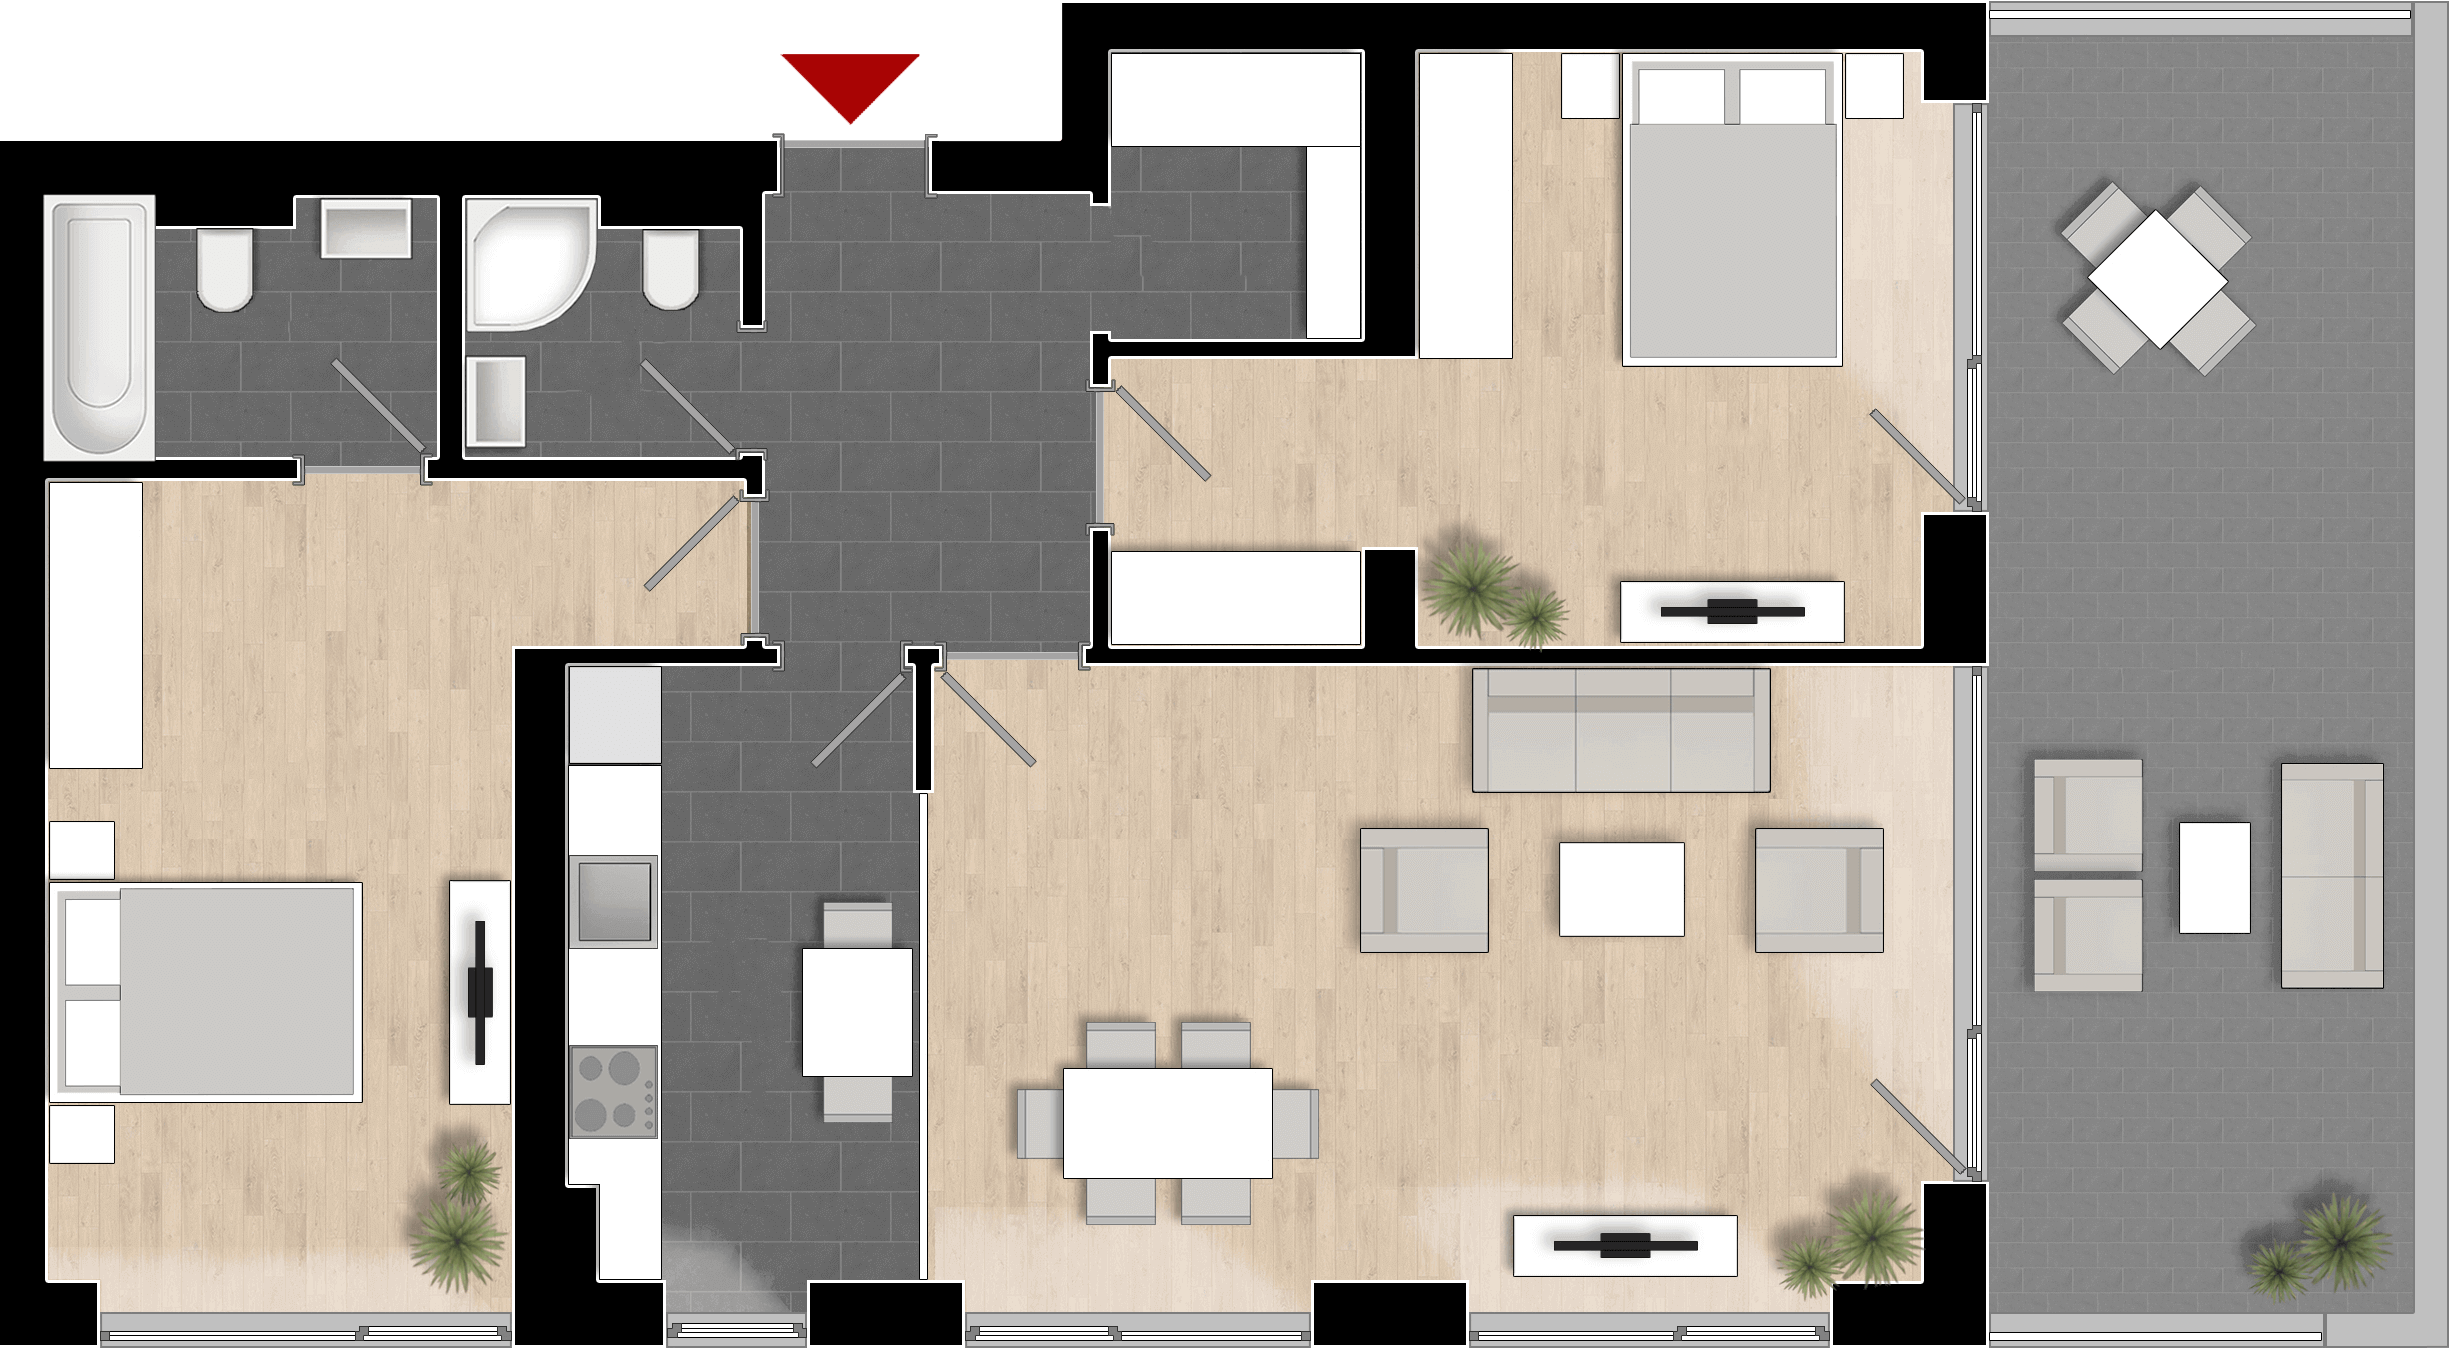  Apartament 907, Tip de apartament 3B cu 3 camere 